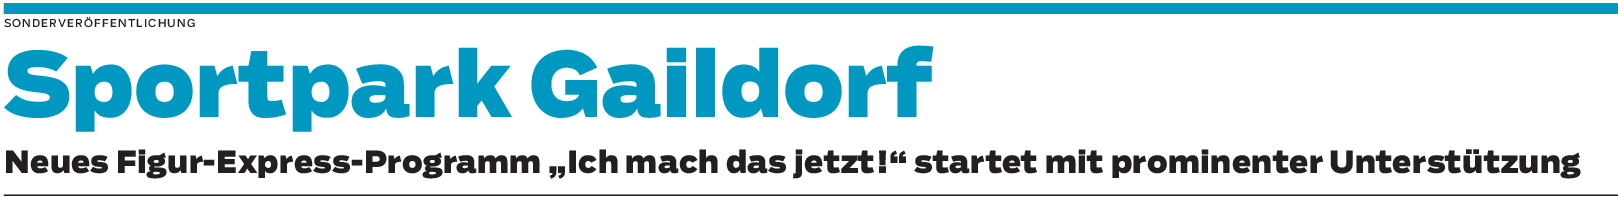 Sportpark Gaildorf: Fitter, schlanker, gesünder mit der T.I.F.-Formel